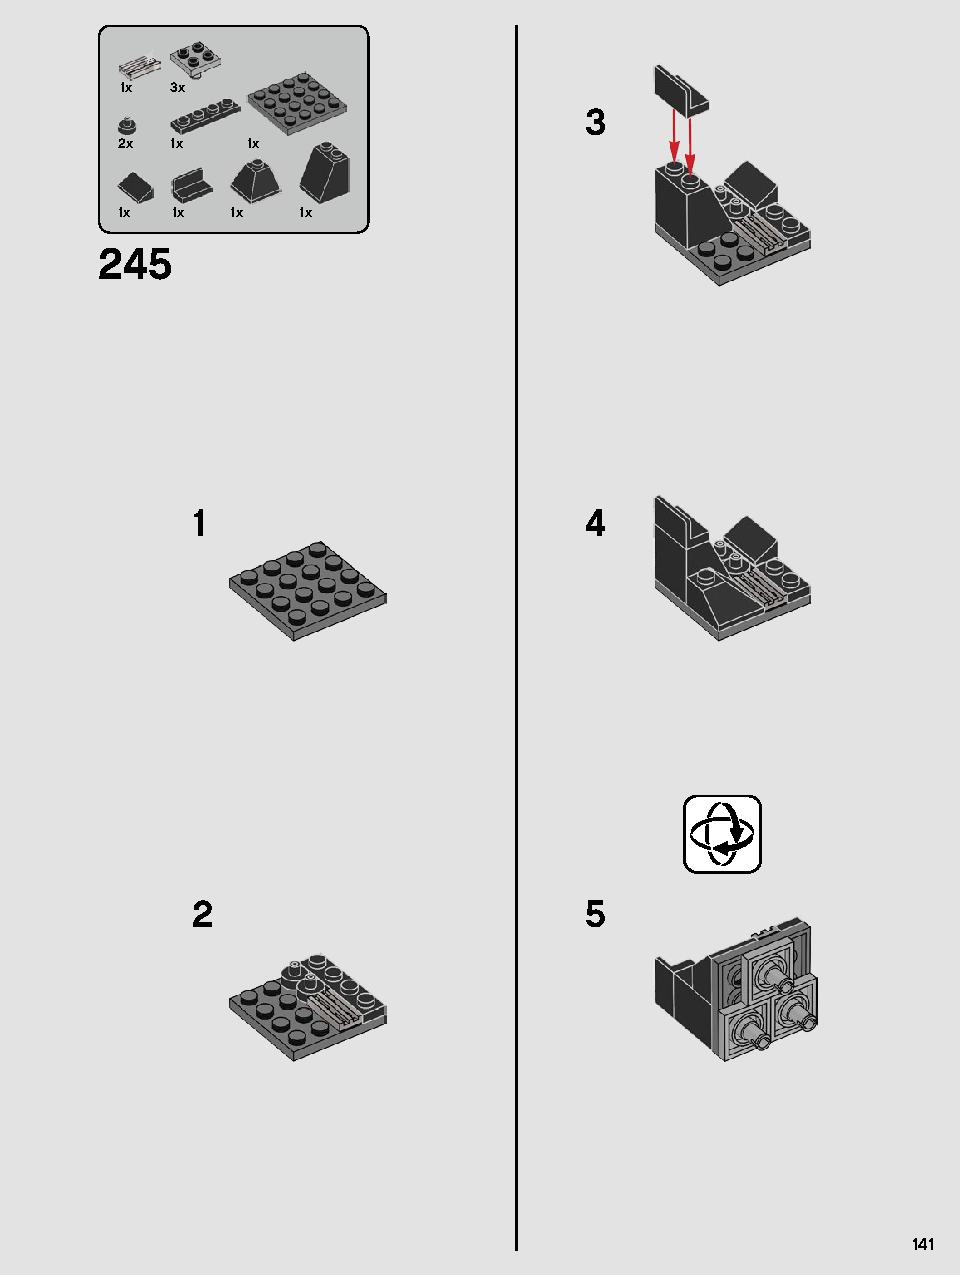 스타워즈 카일로 렌의 셔틀™ 75256 레고 세트 제품정보 레고 조립설명서 141 page